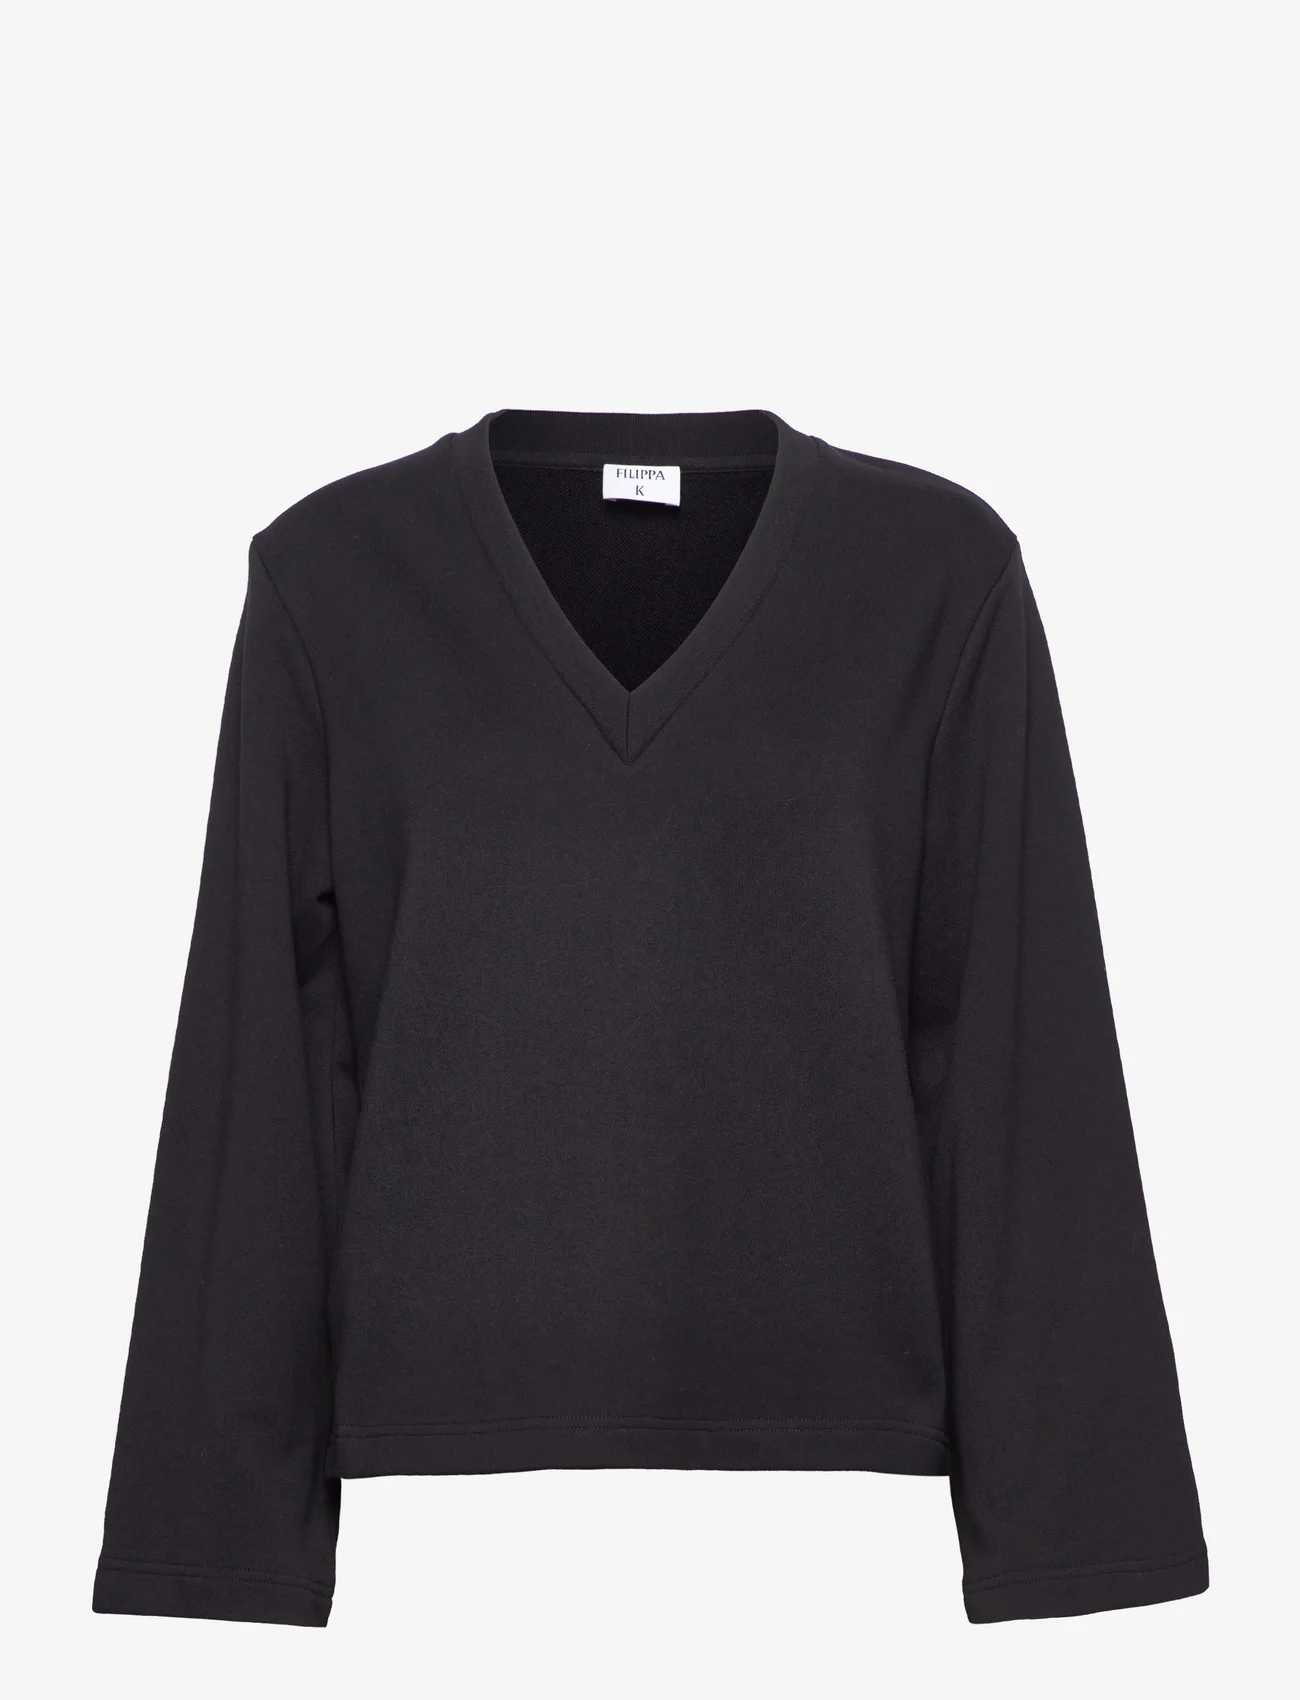 Filippa K - Mara Sweatshirt V-neck - black - 0